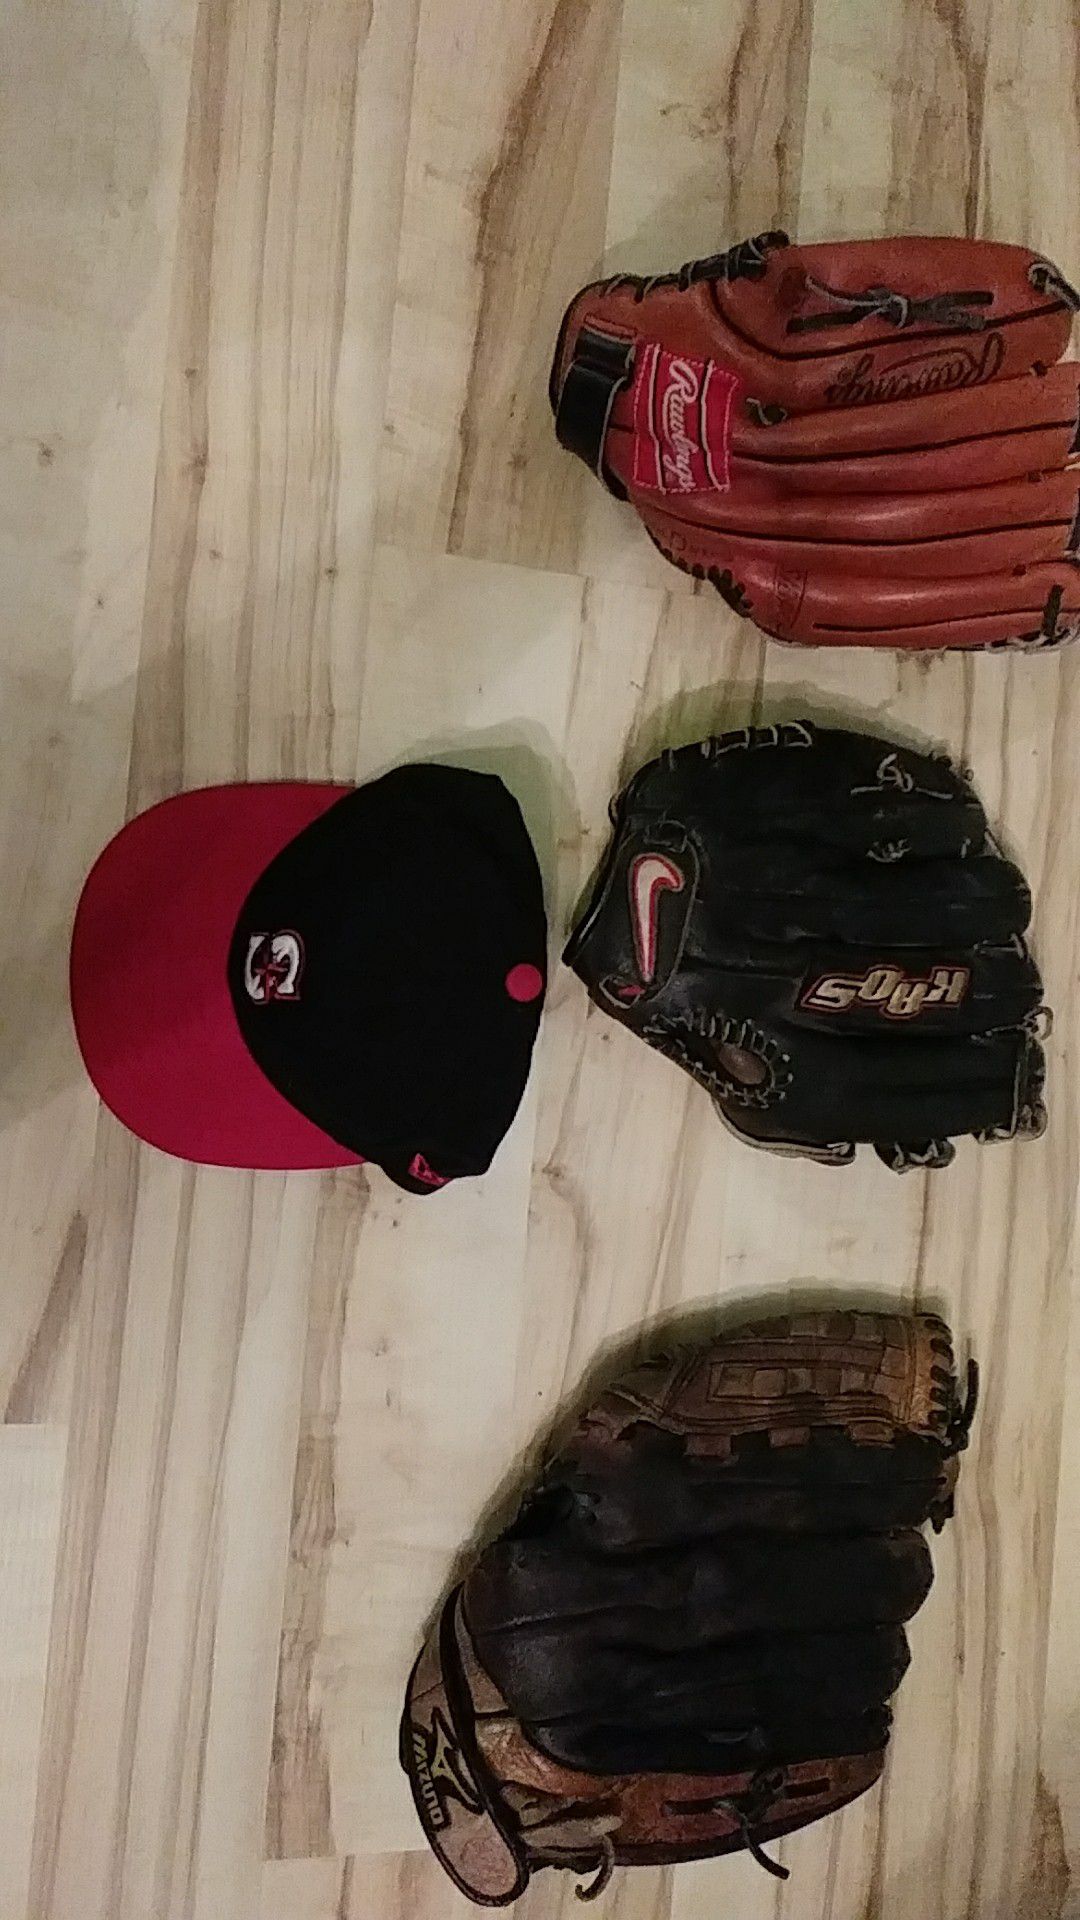 Lot of baseball gloves, Nike Mizuno, Rawlings and Mariners hat